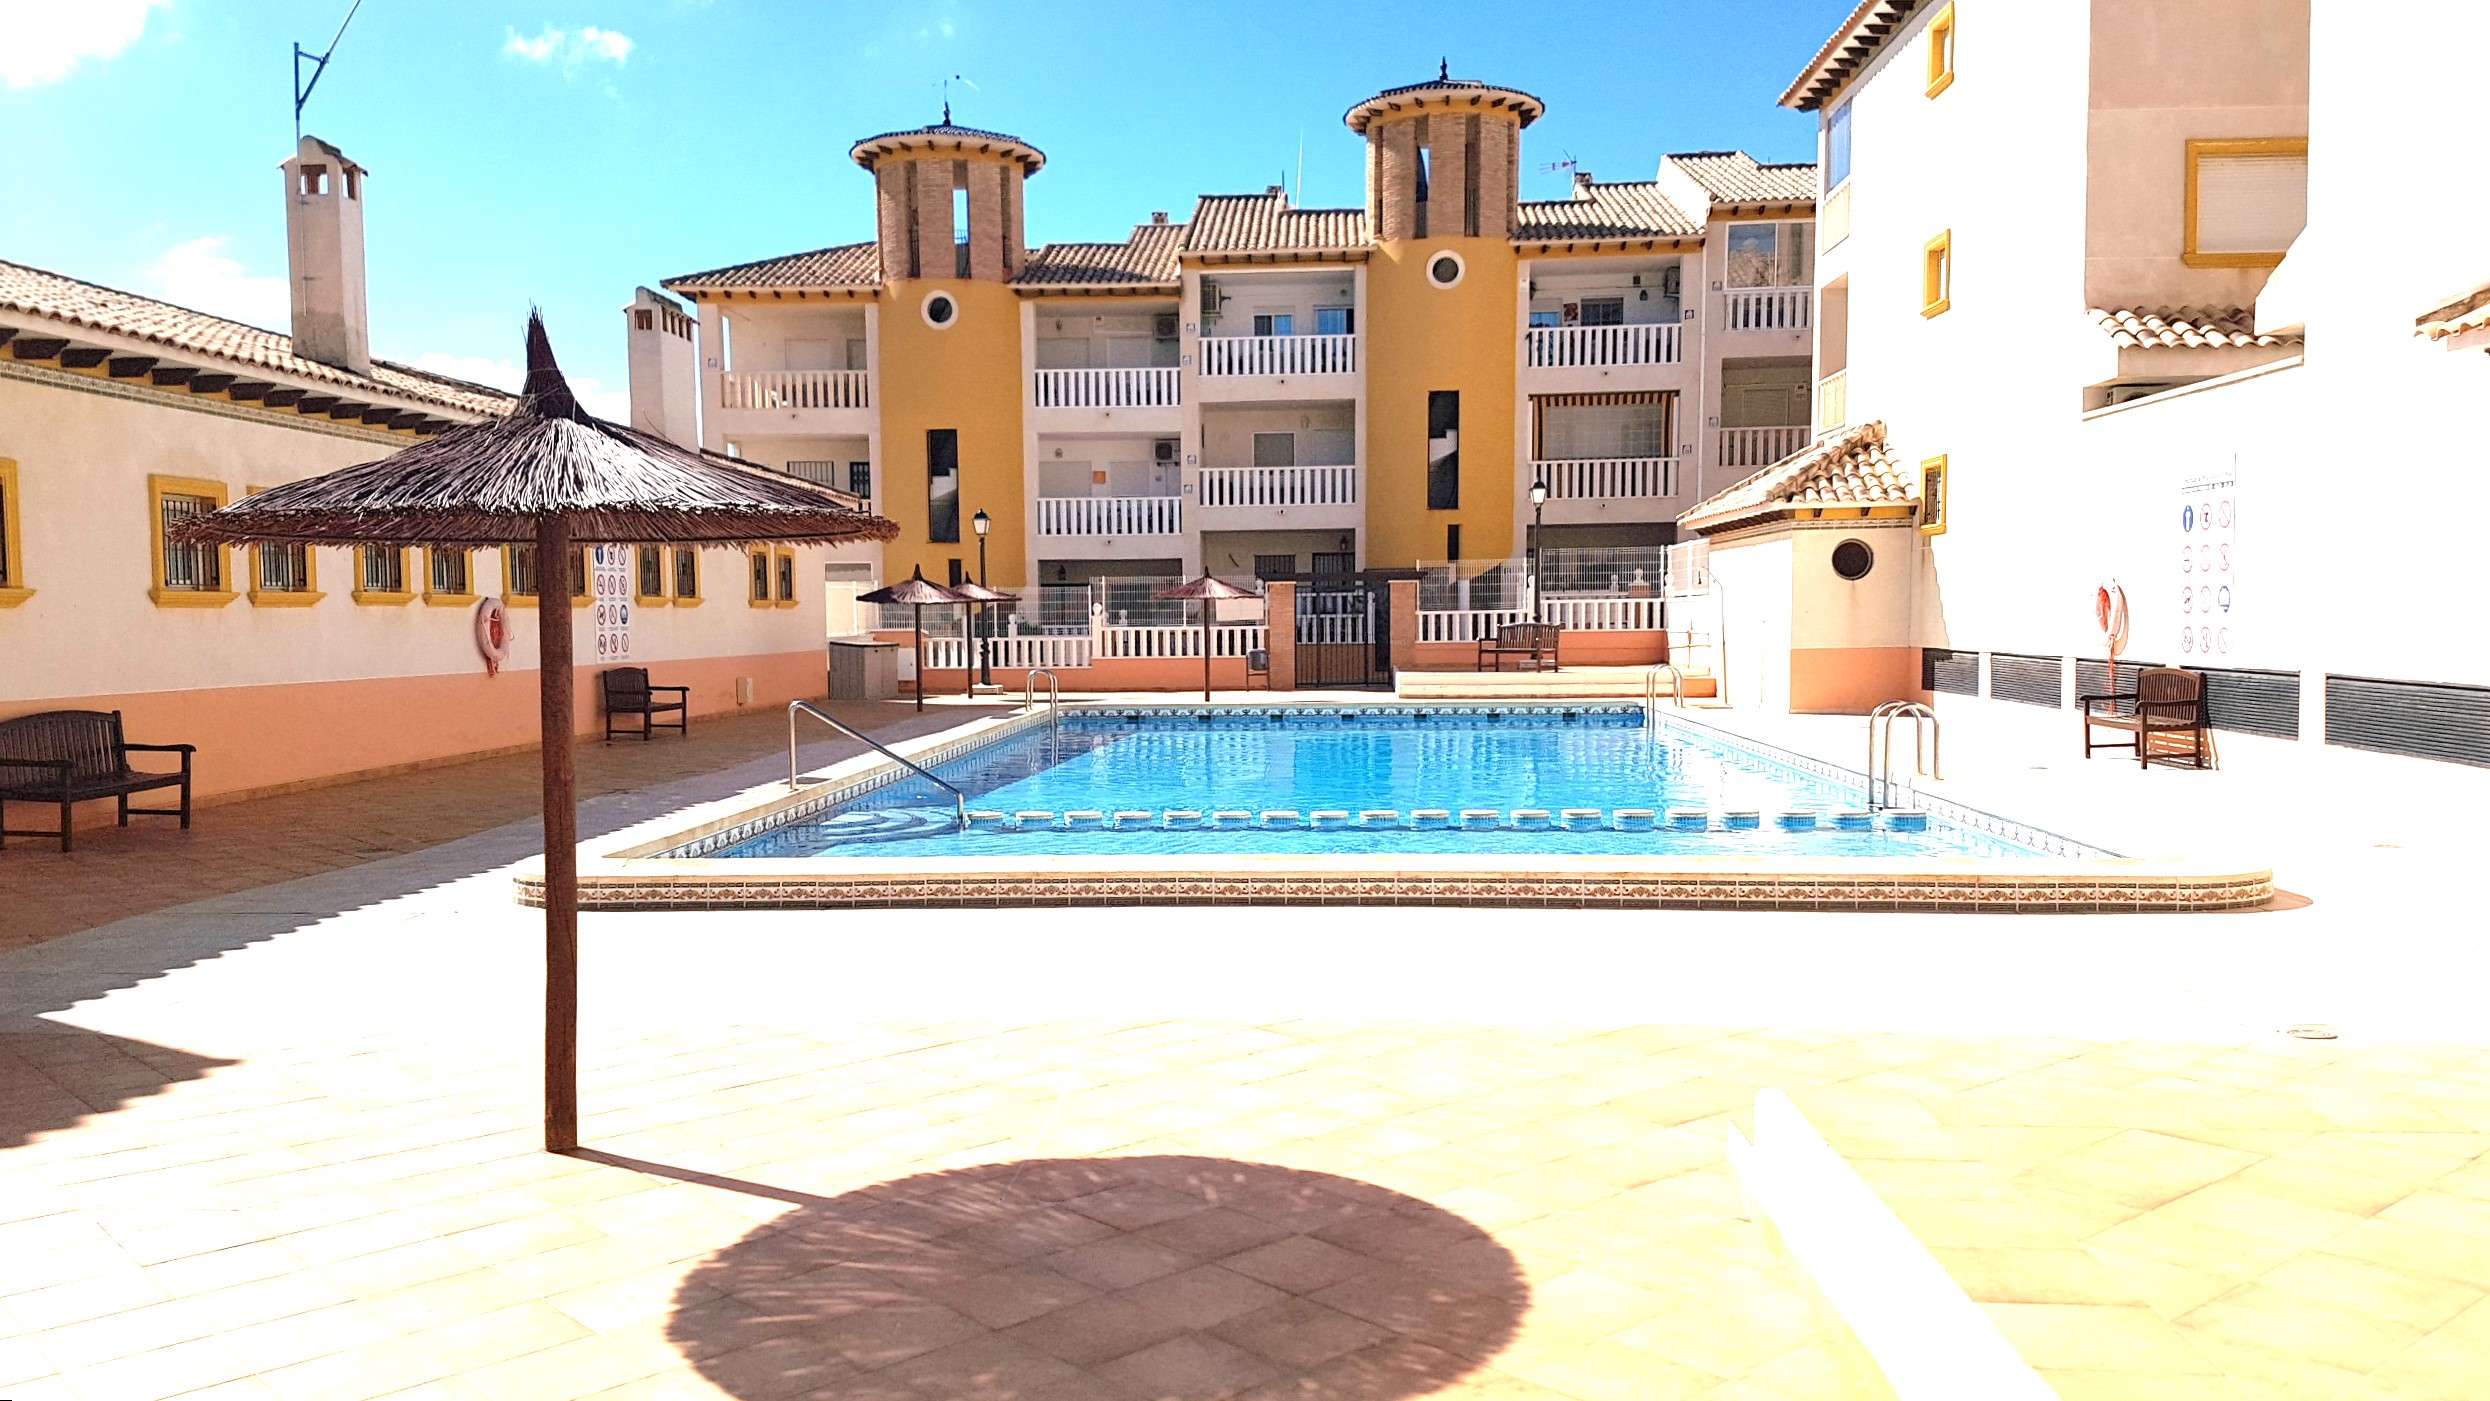 3405-03745. Apartment in the Marina del Pinet (Elche), Alicante. 